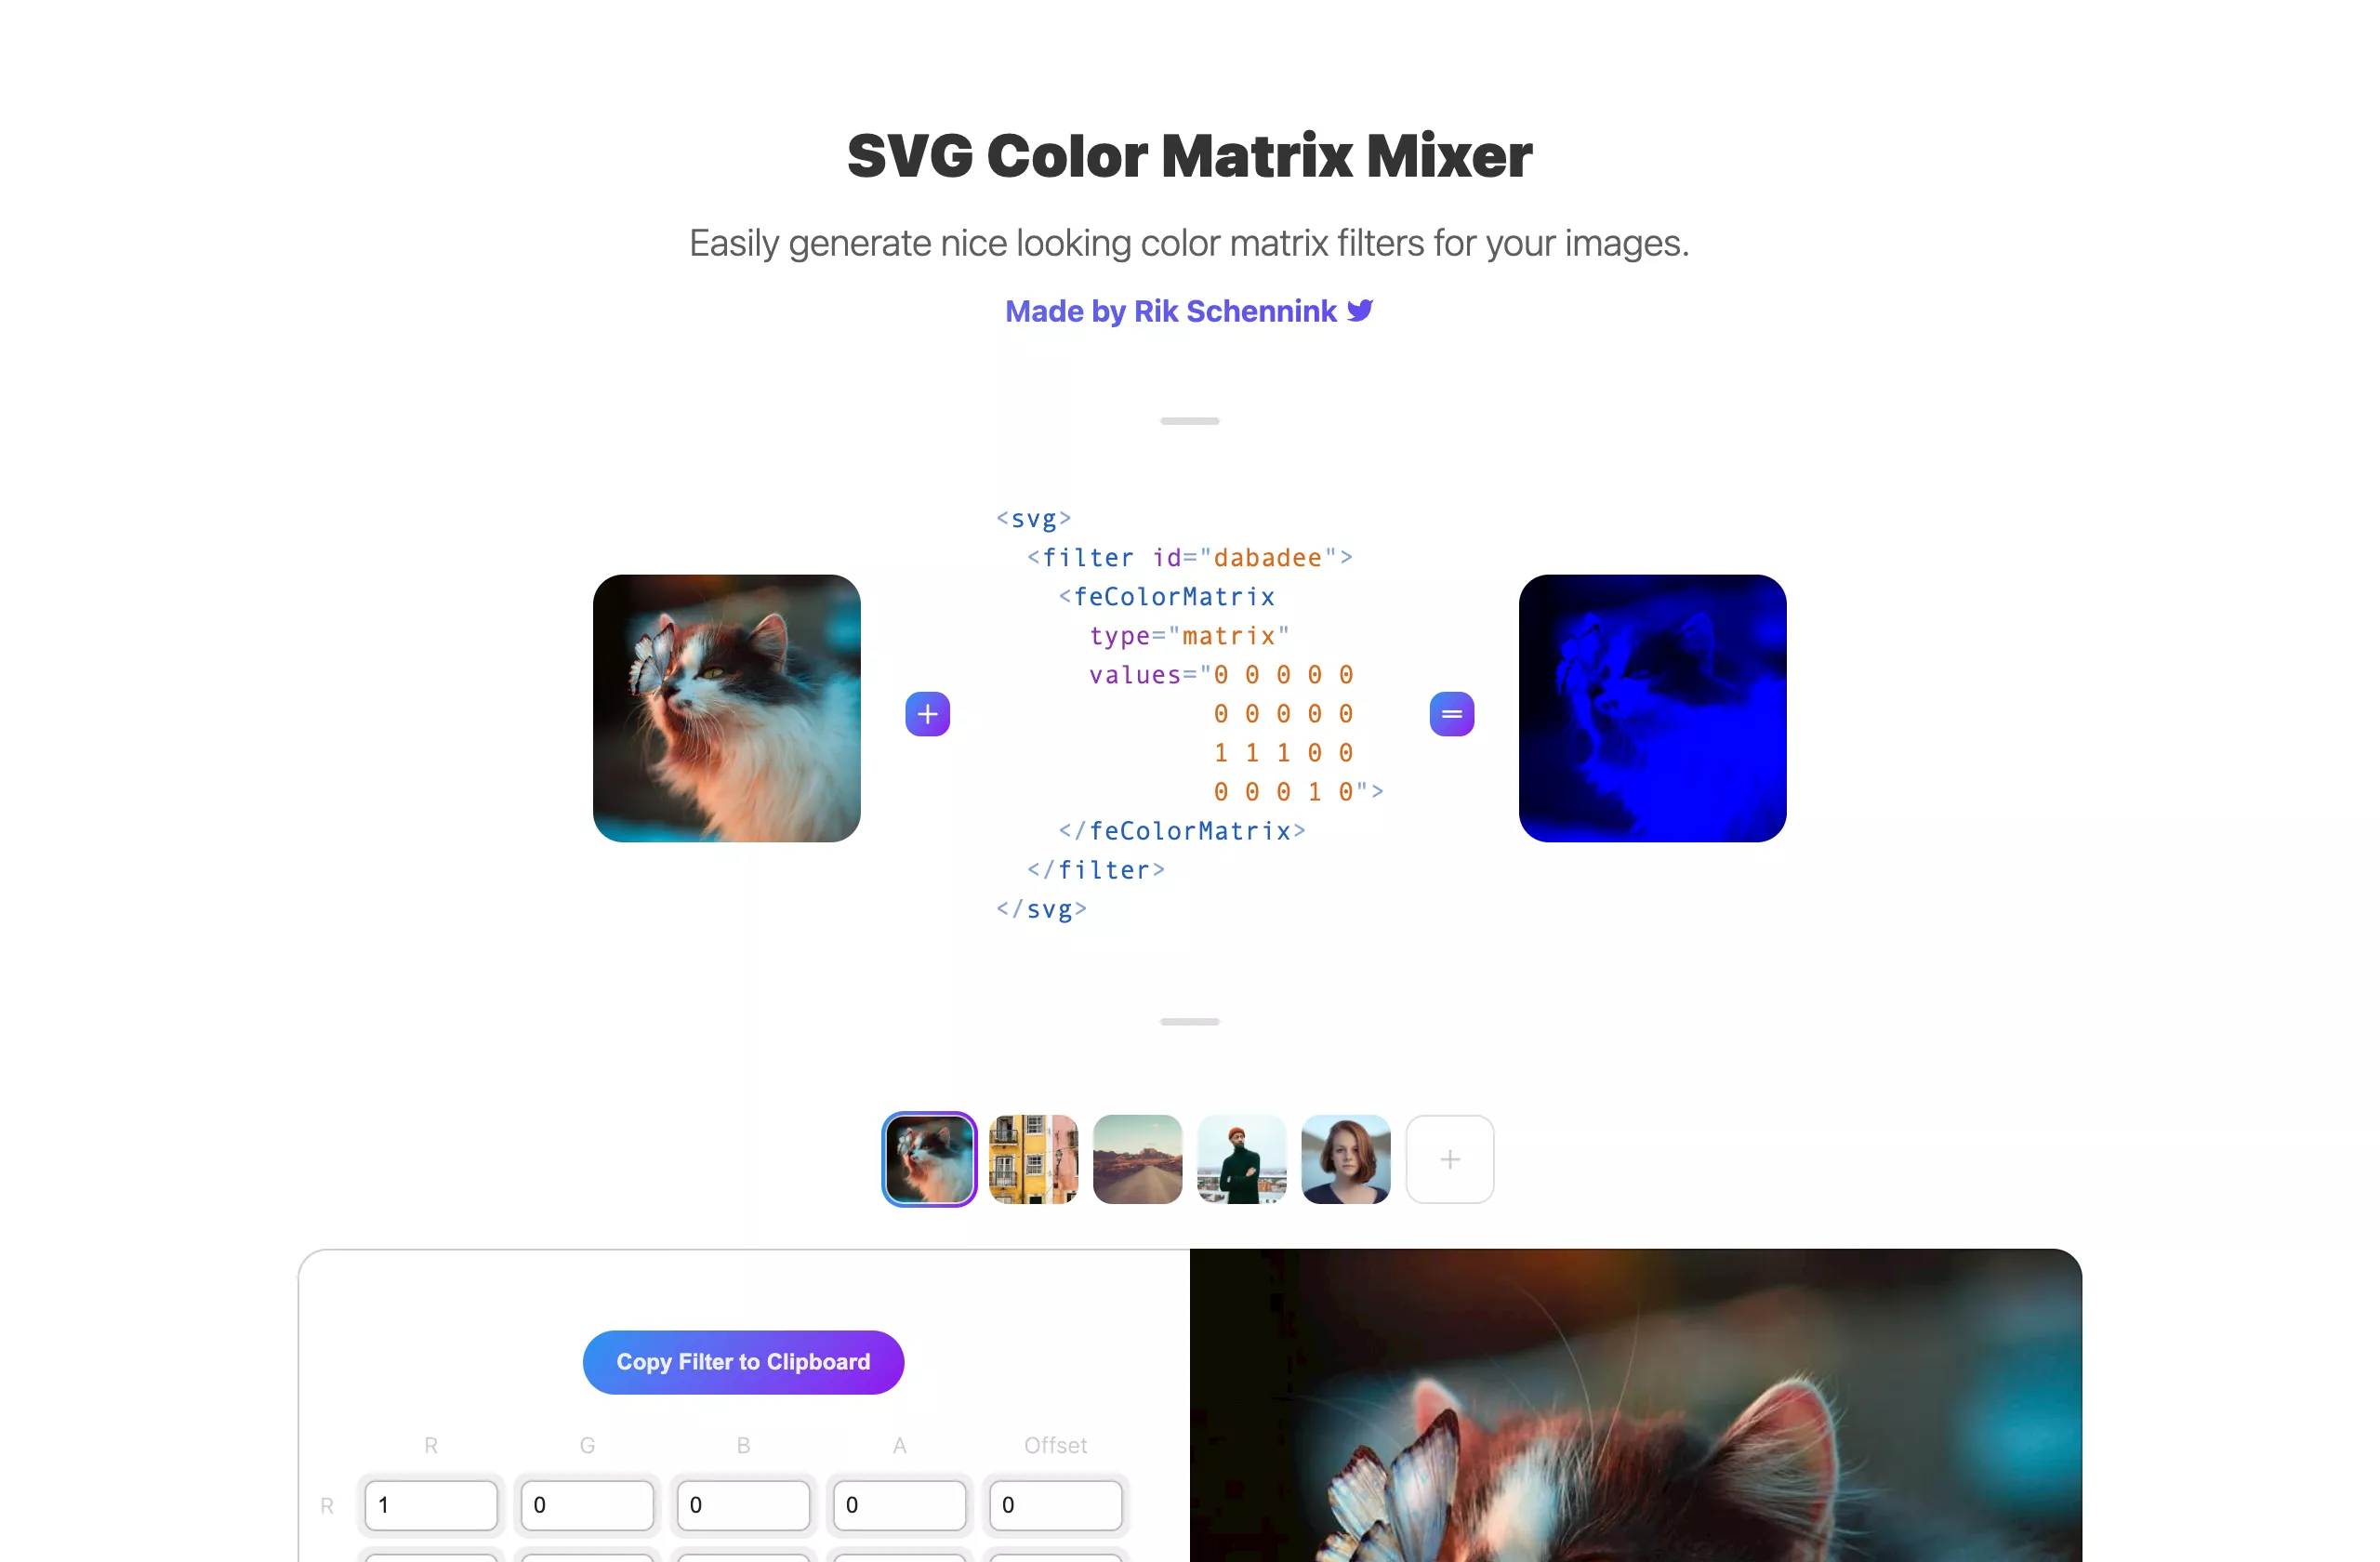 SVG Color Matrix Mixer